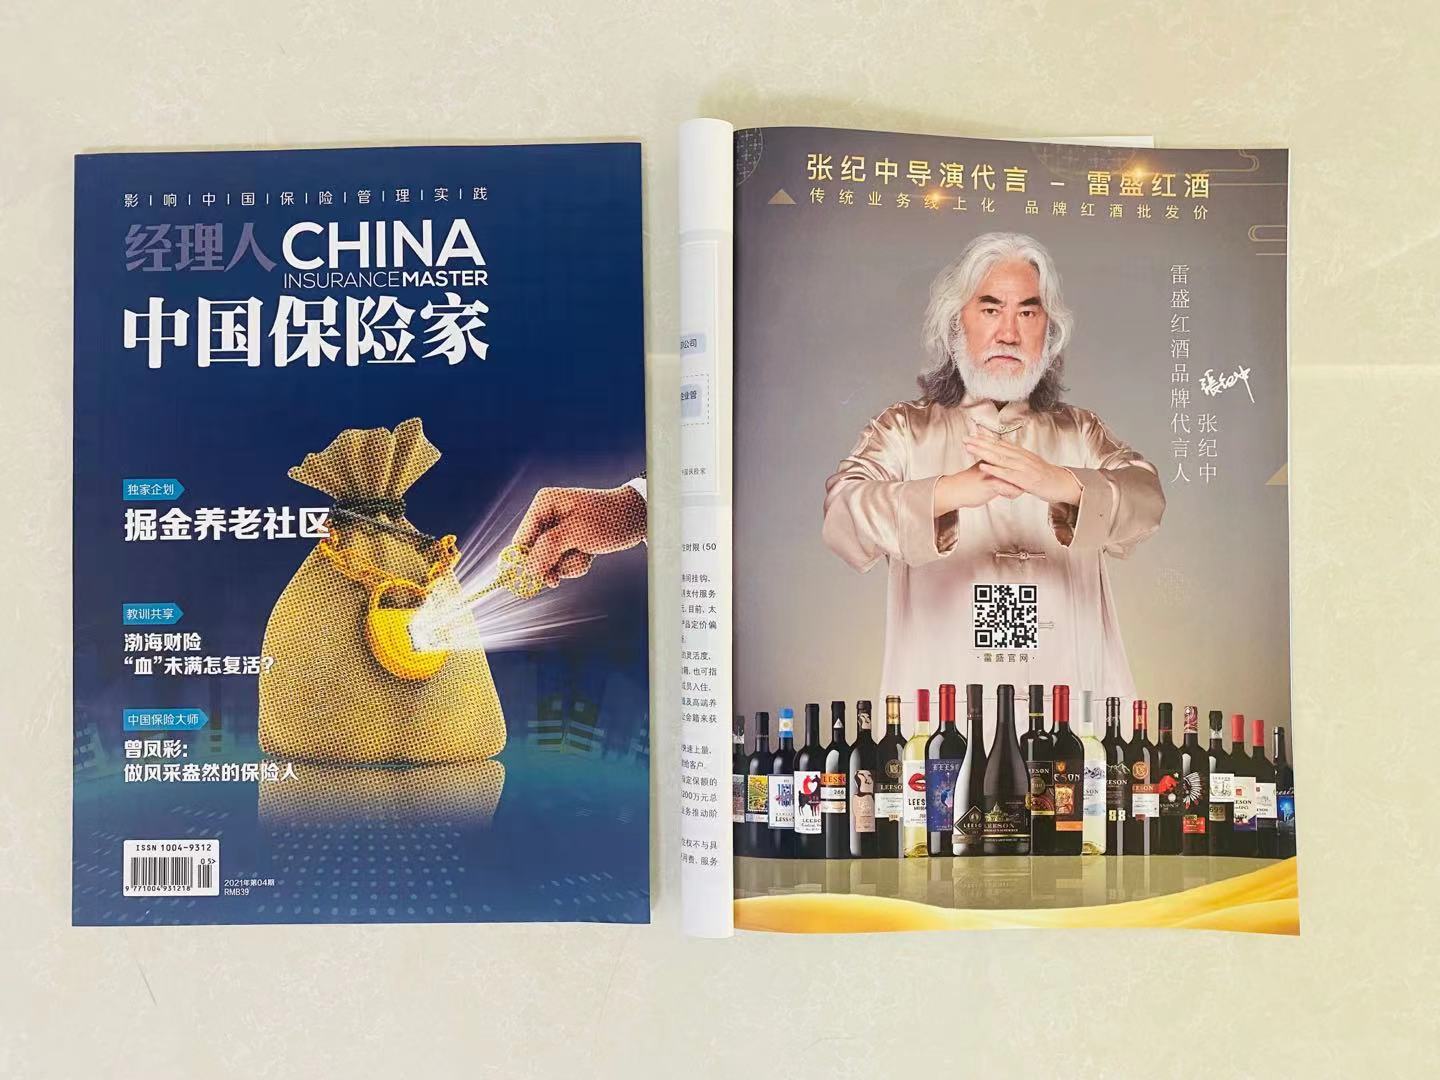 《中国保险家》杂志刊登雷盛红酒广告(图1)